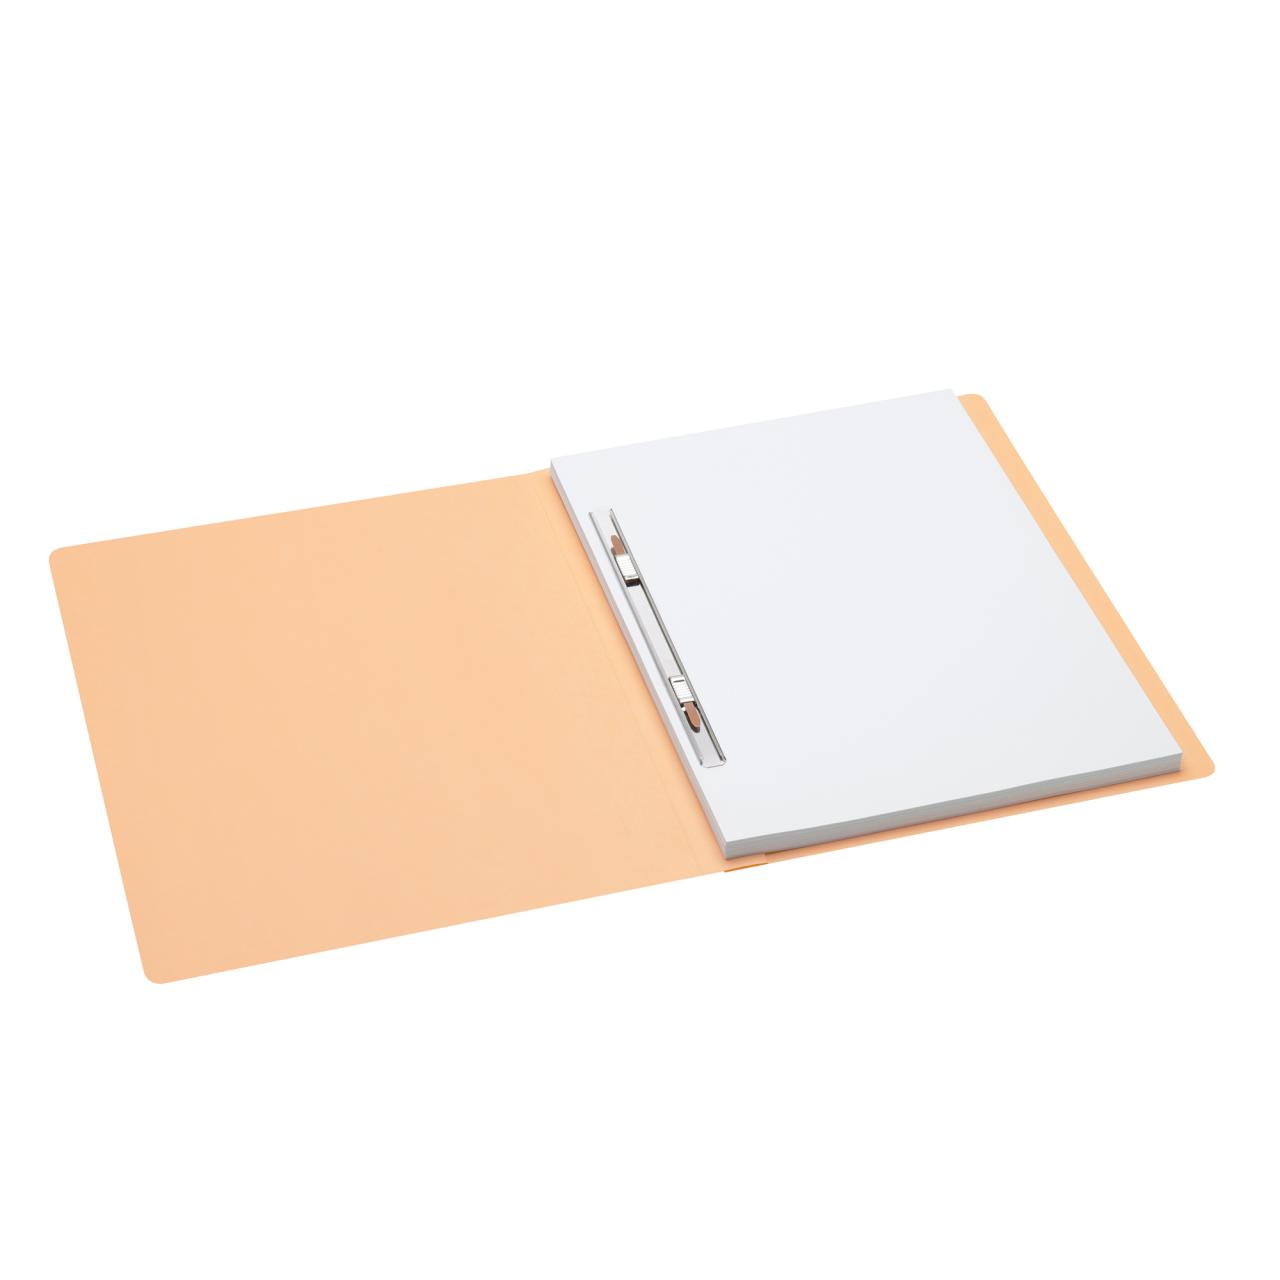 Secolor Folder with Metal Slide Fastener, A4, 100% recycled cardboard, FSC® 